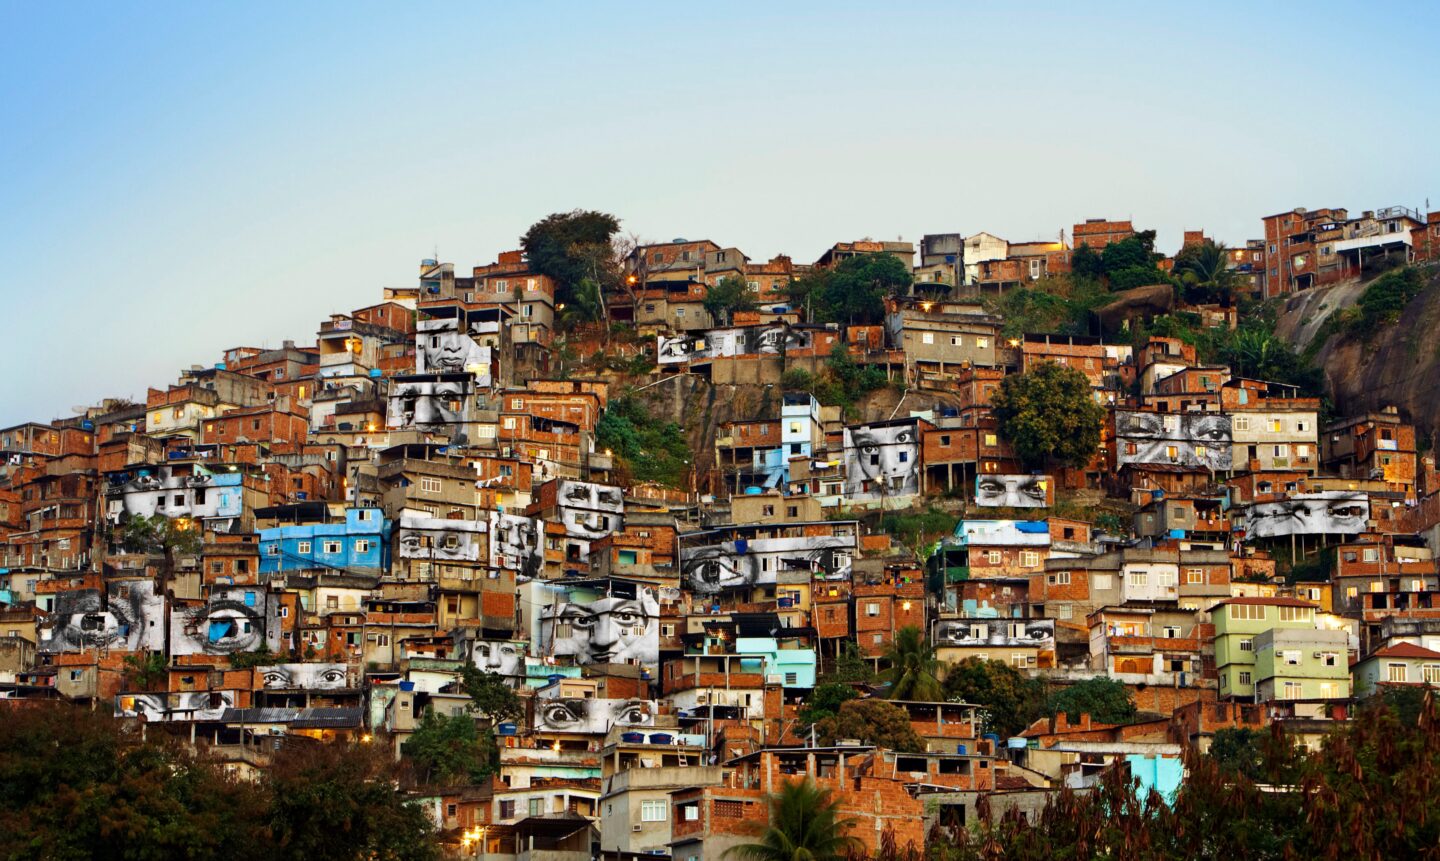 JR – der französische Streetart Künstler 
Favela, Rio de Janeiro, äugen und Gesichter auf Hauswände plakatiert
